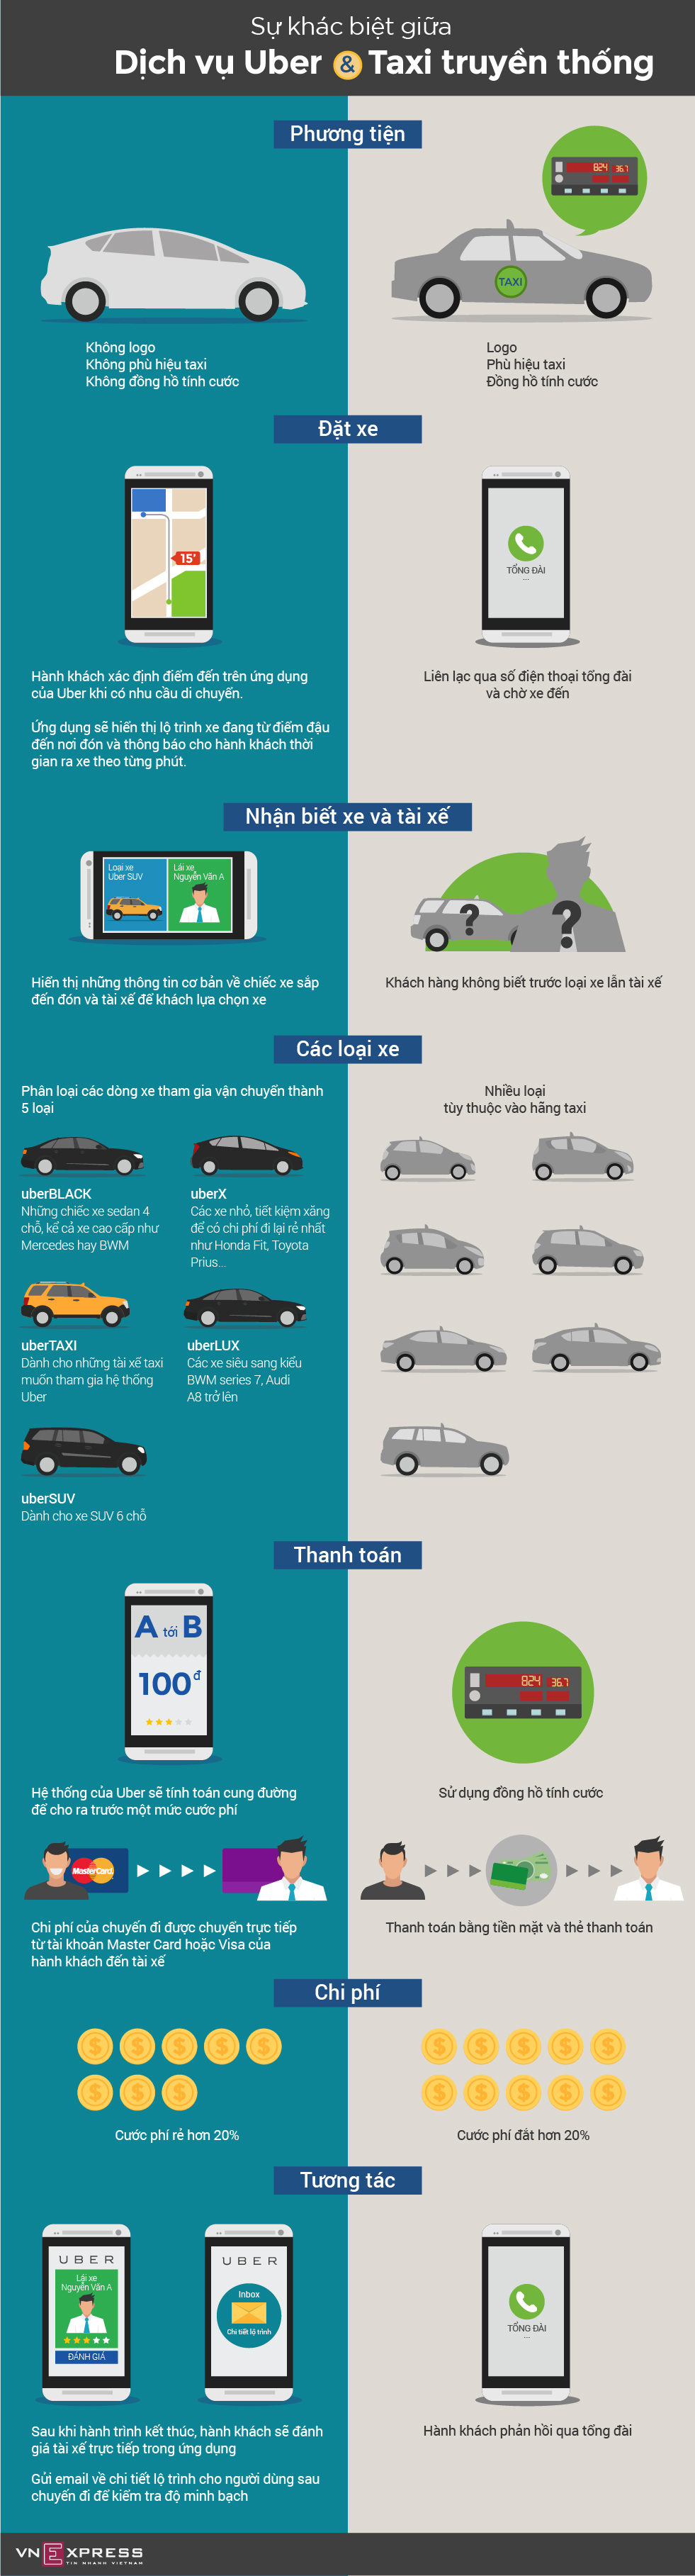 [ Infographic ] Uber khác gì so với taxi truyền thống?